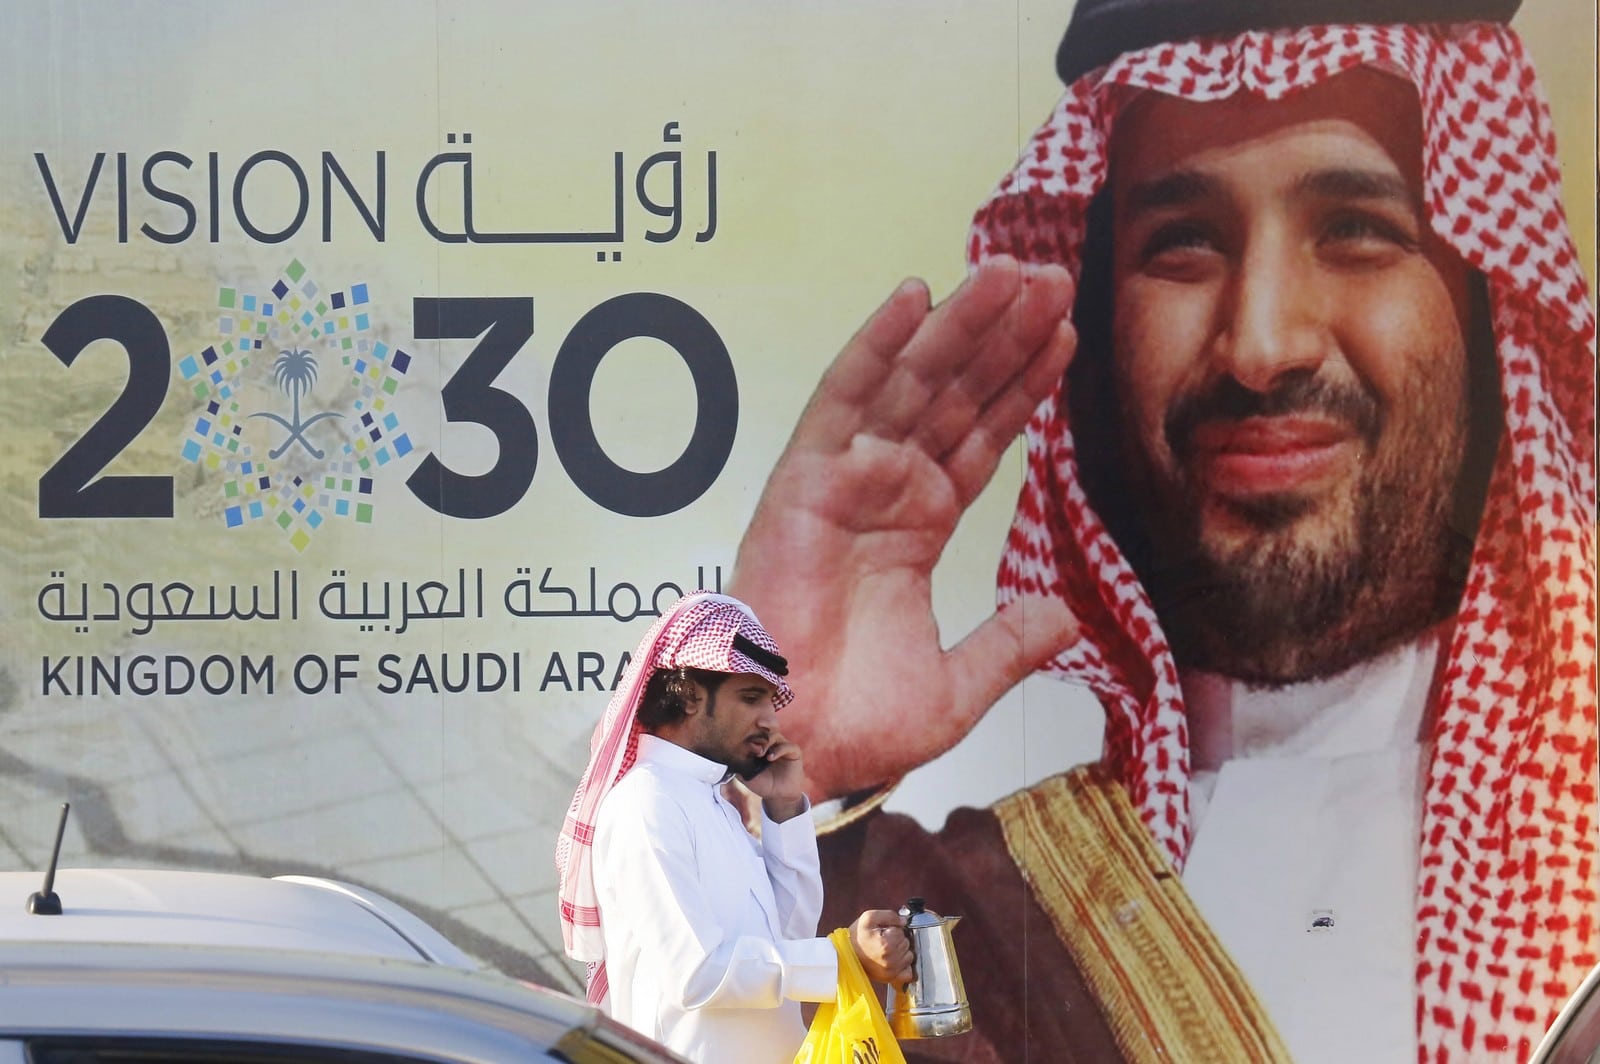 Février 2020 à Djeddah, pancarte montrant le prince héritier Mohammed bin Salmane et son plan "Vision 2030",
Auteurs  : Amr Nabil/AP/SIPA,
Numéro de reportage  : AP22425949_000001.